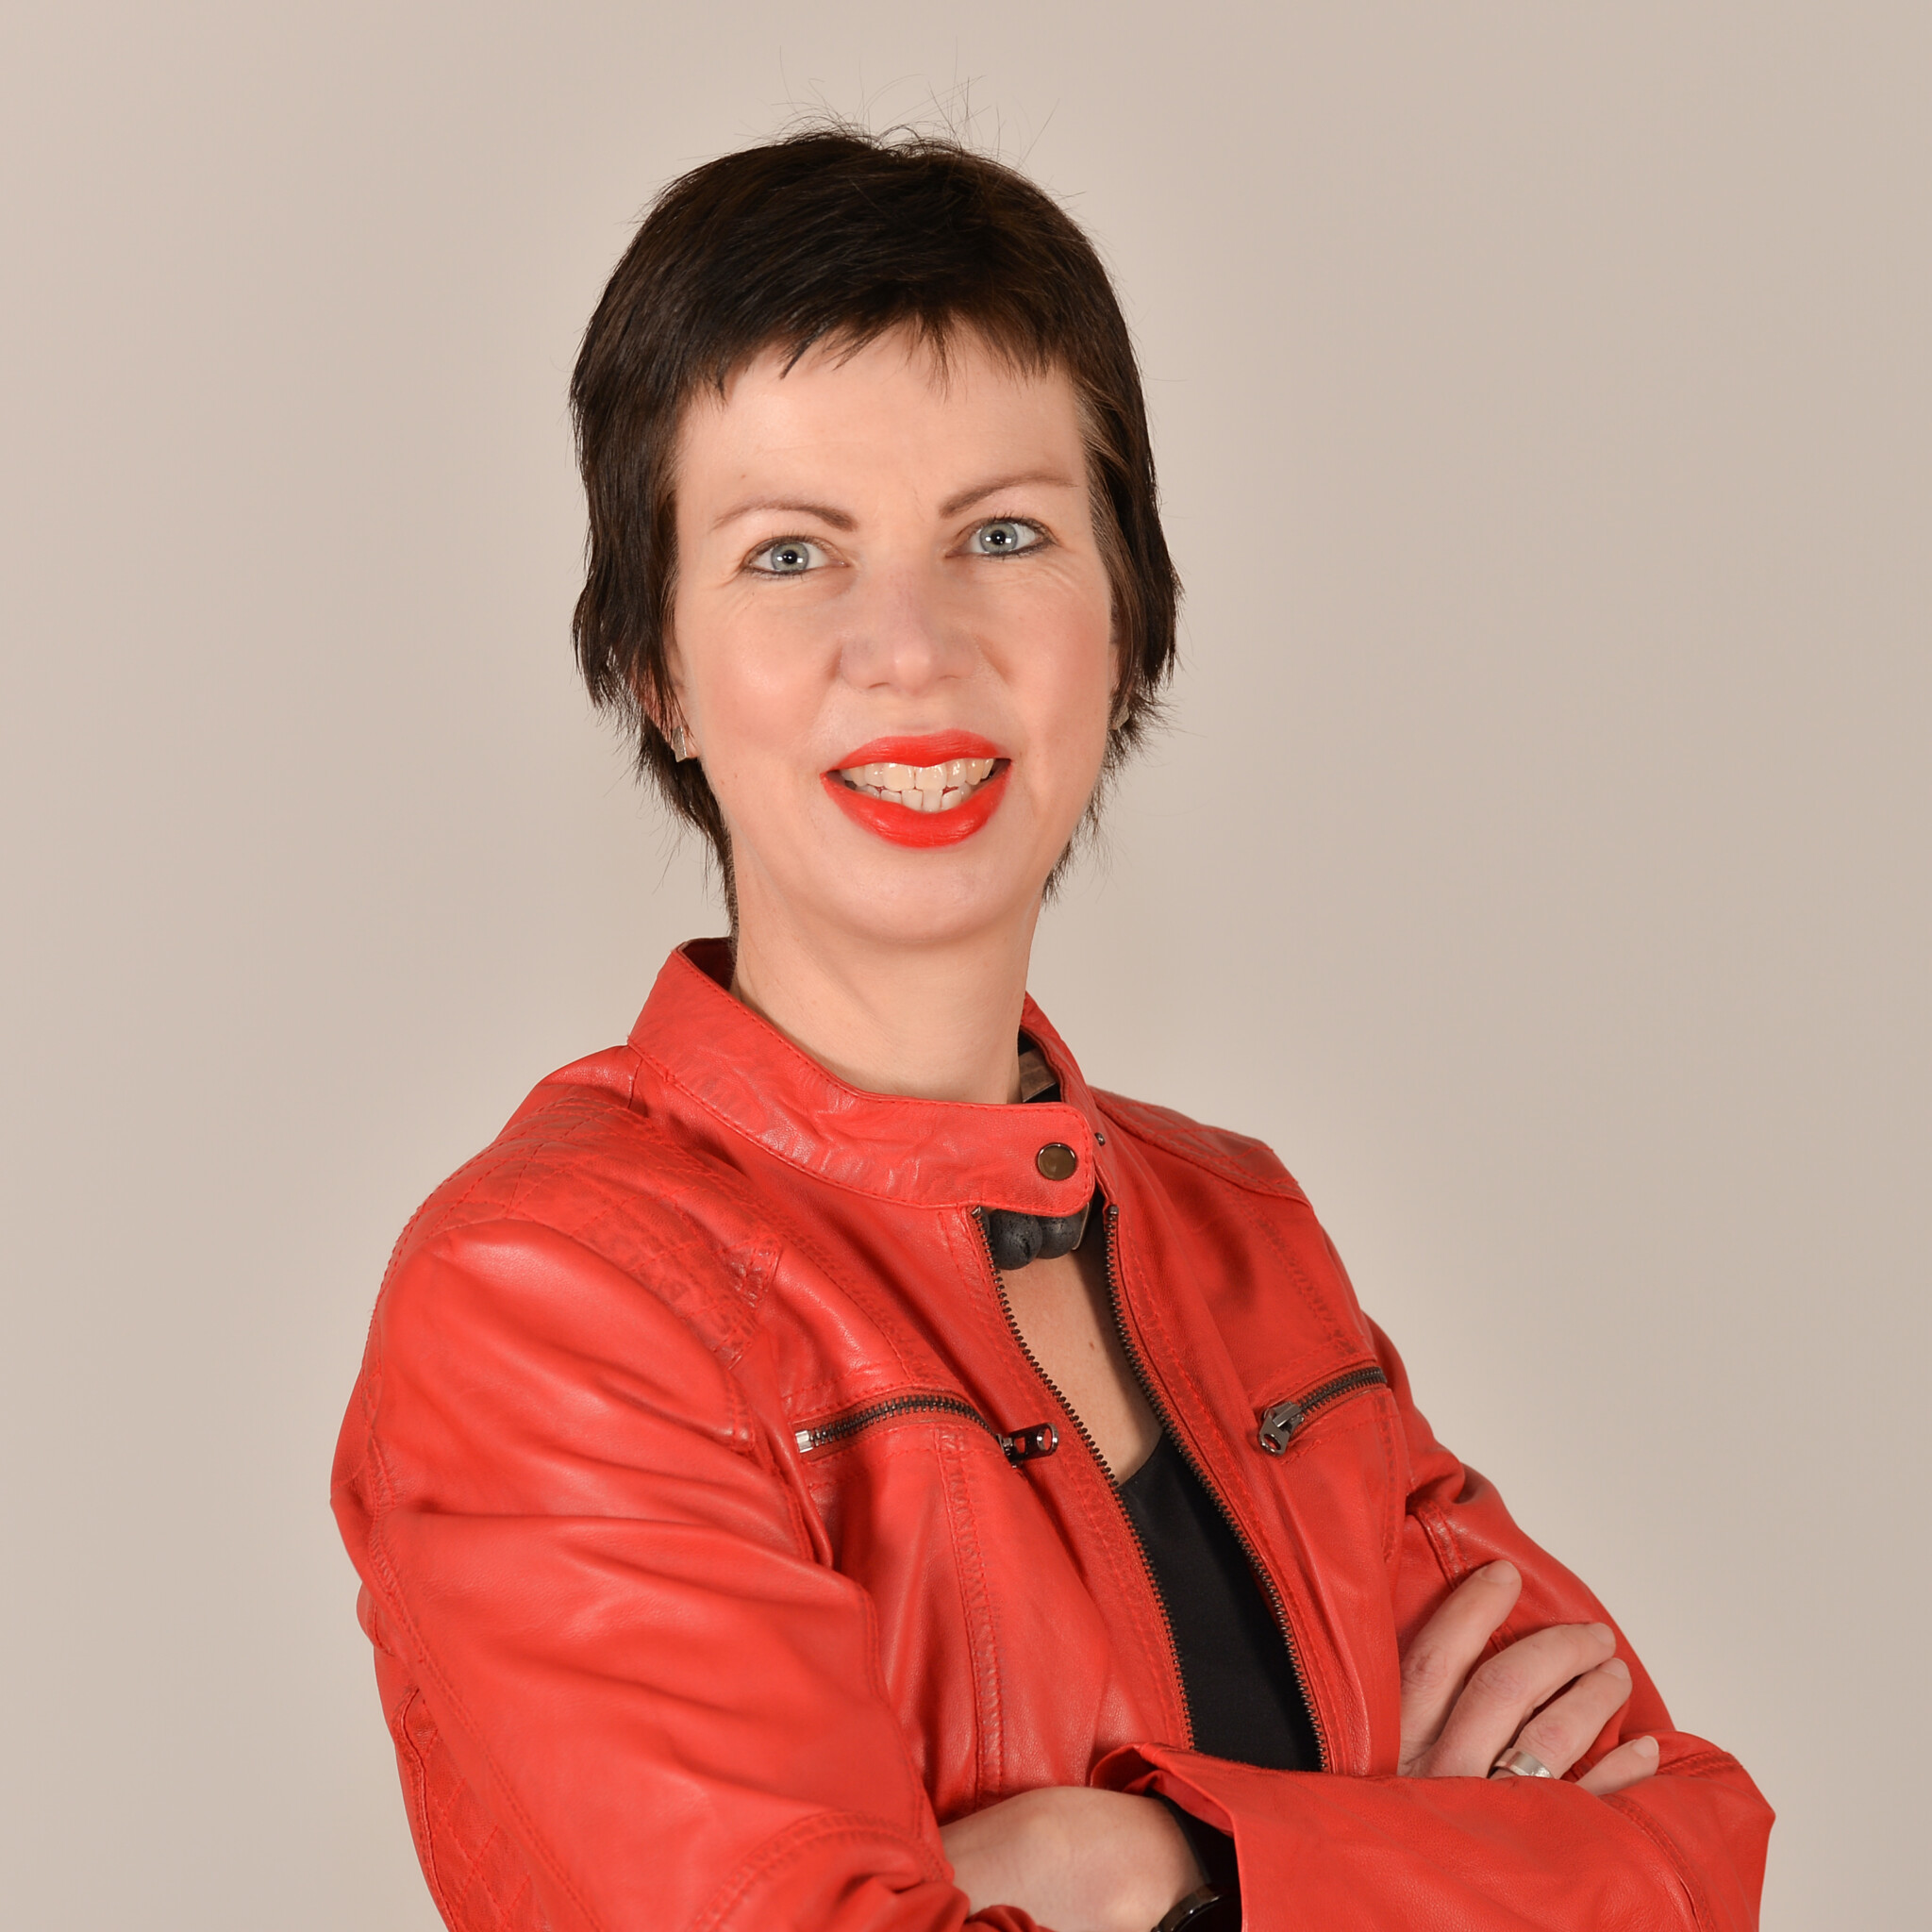 Profilbild von Dr. Martina Diedrich. Sie trägt eine schwarze Bluse und eine rote Lederjacke.